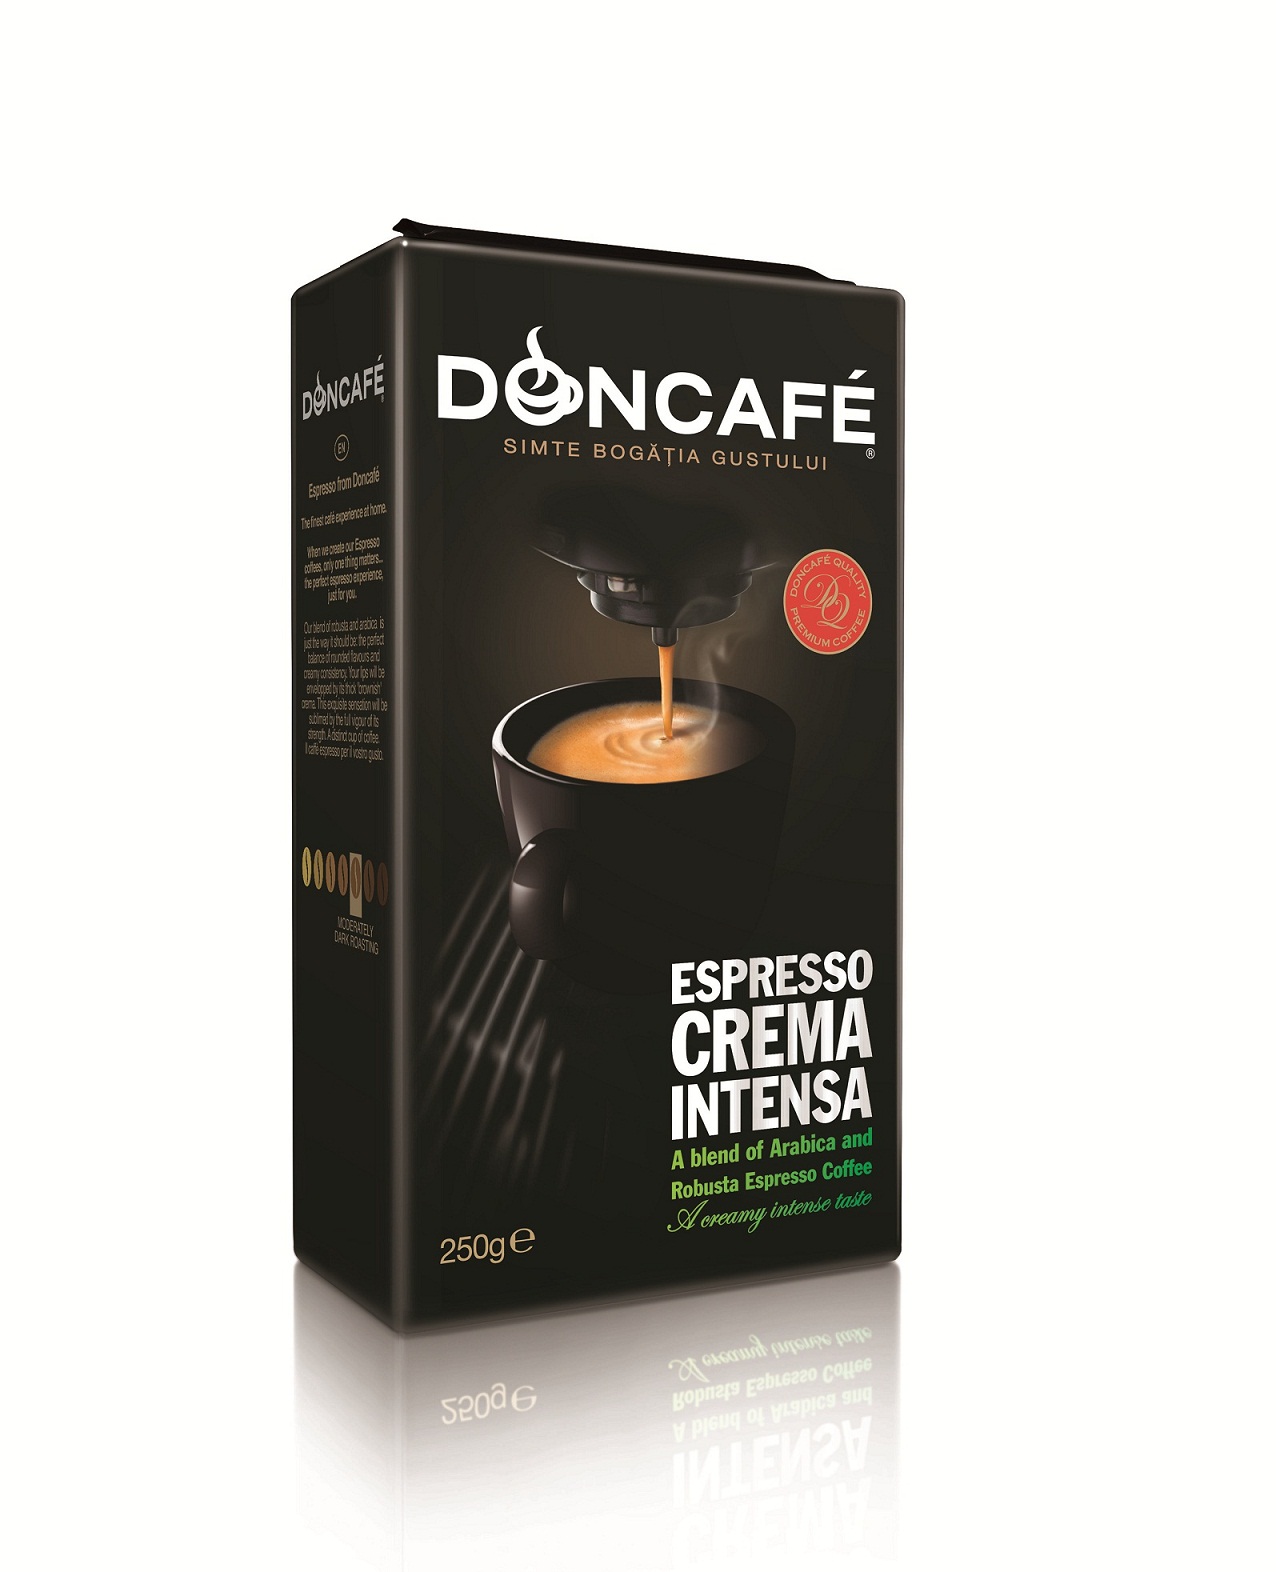 Doncafé Espresso Crema Intensa – plăcerea totală a unui espresso adevărat